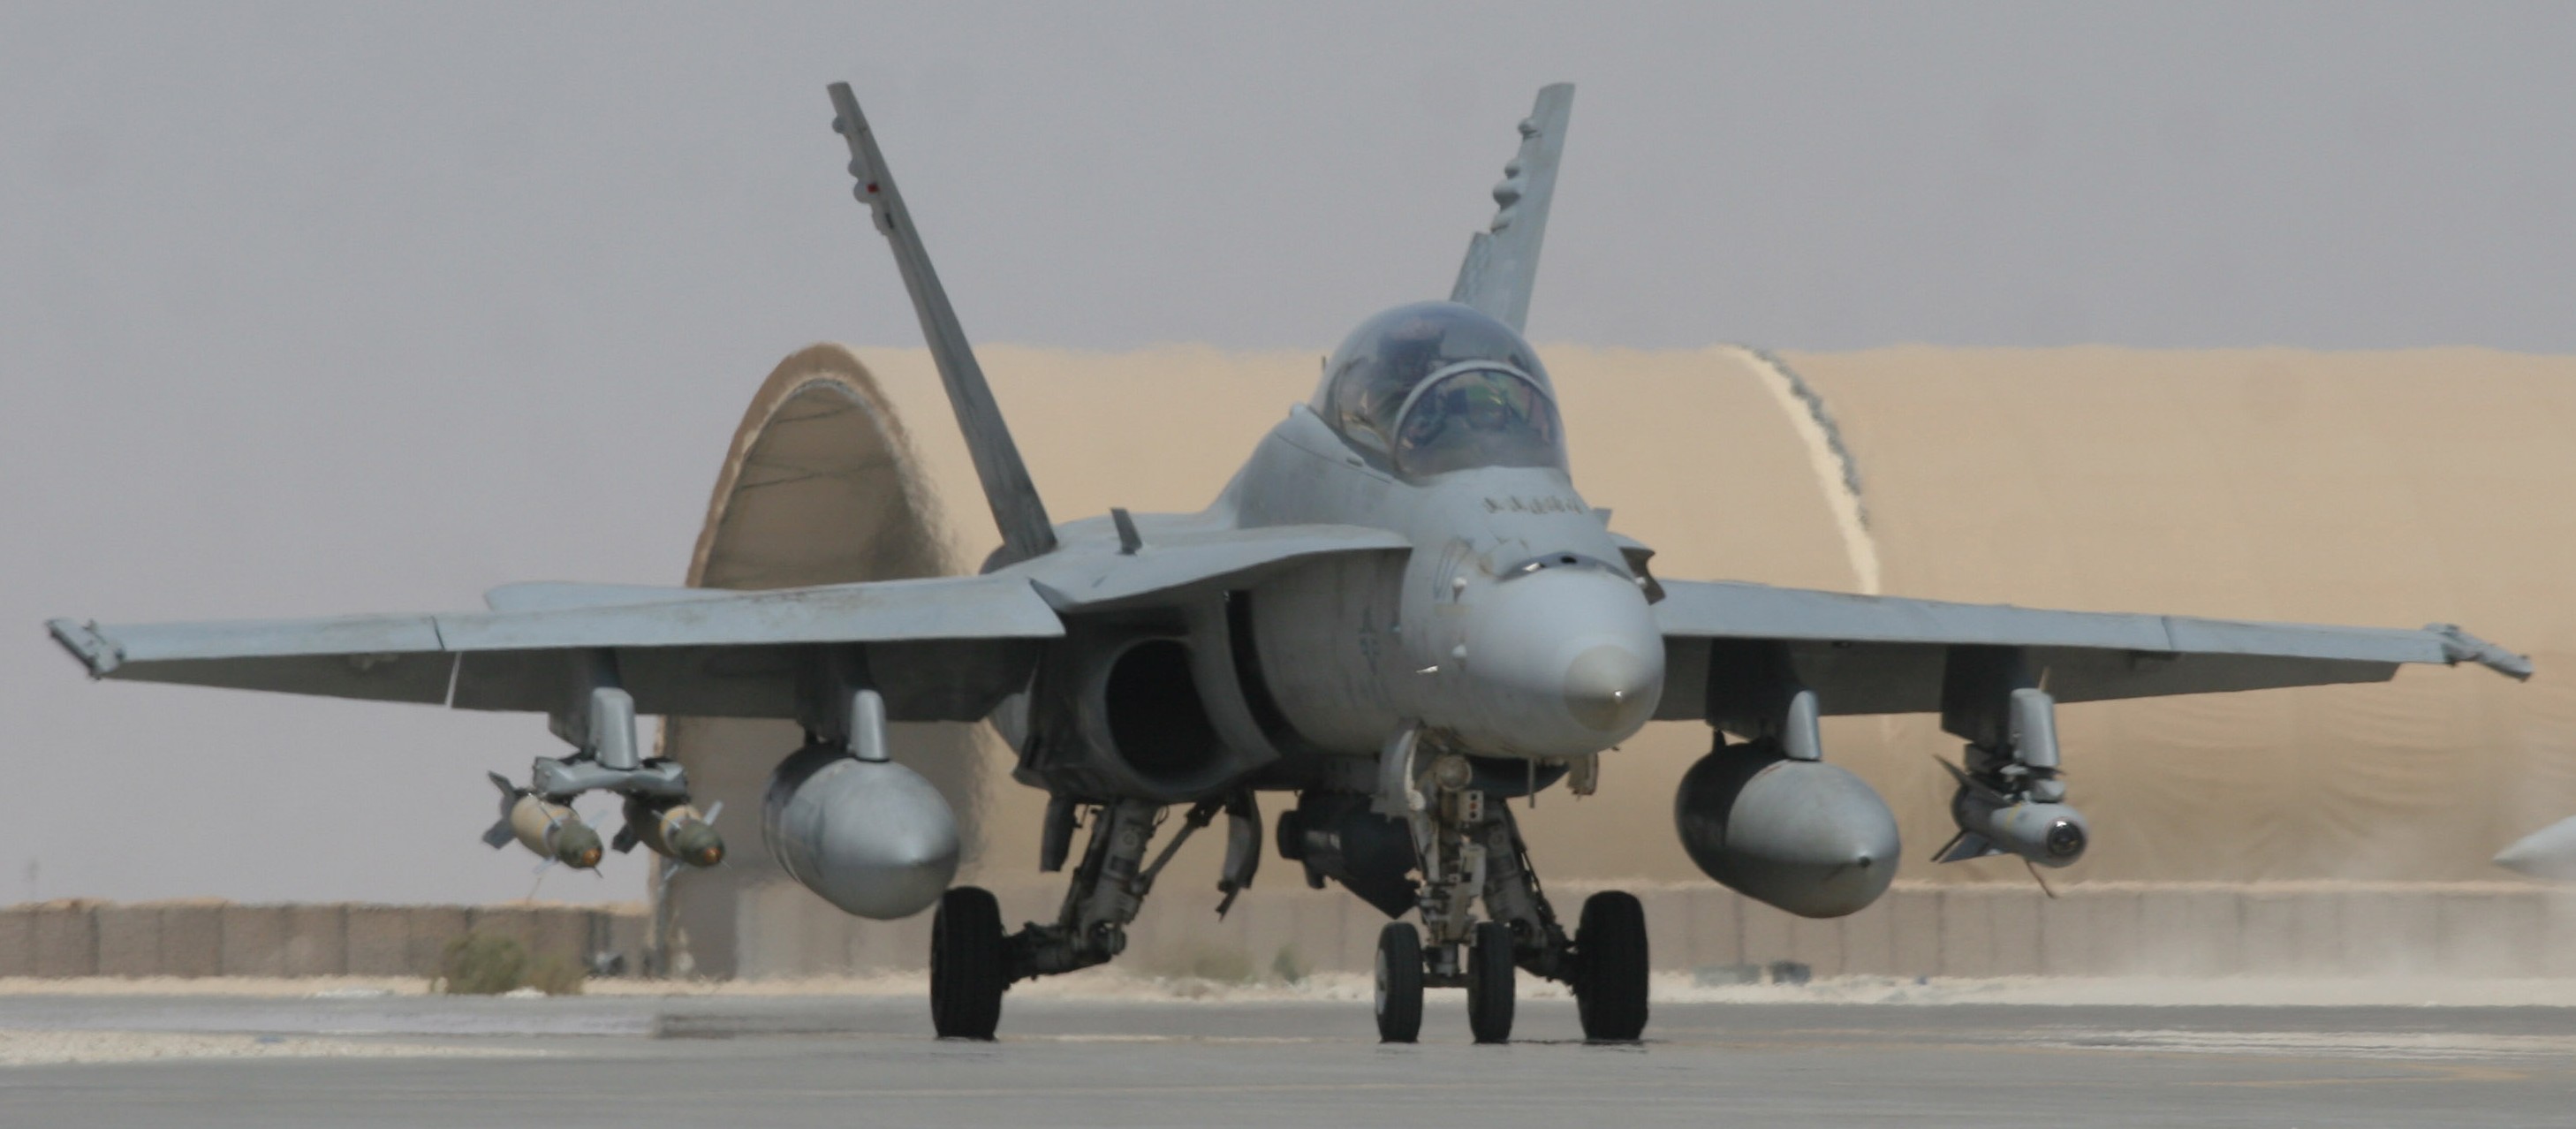 vmfa(aw)-533 hawks marine fighter attack squadron usmc f/a-18d hornet 09 al asad iraq